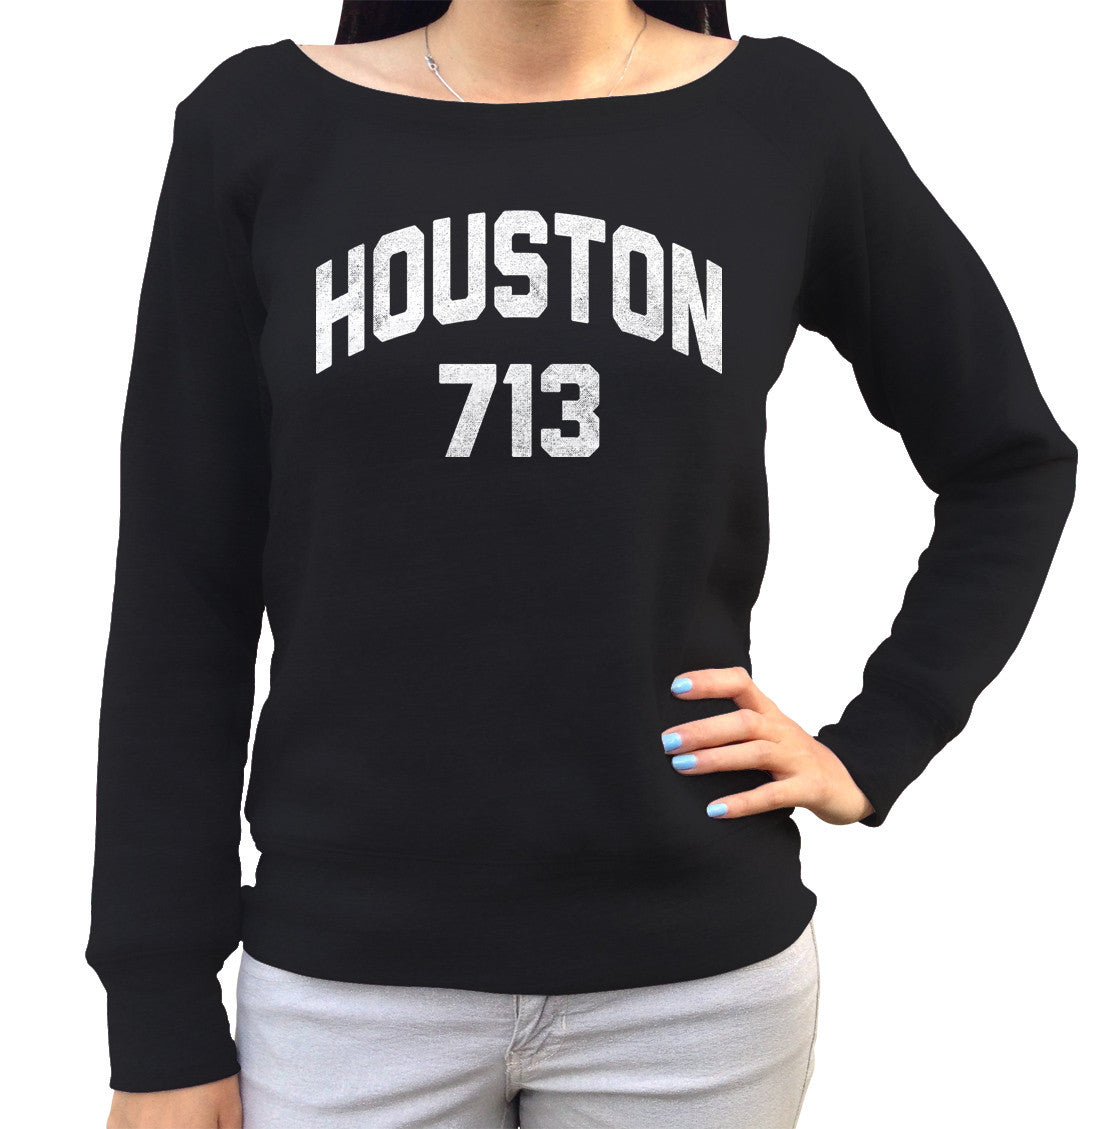 Women's Houston 713 Area Code Scoop Neck Fleece